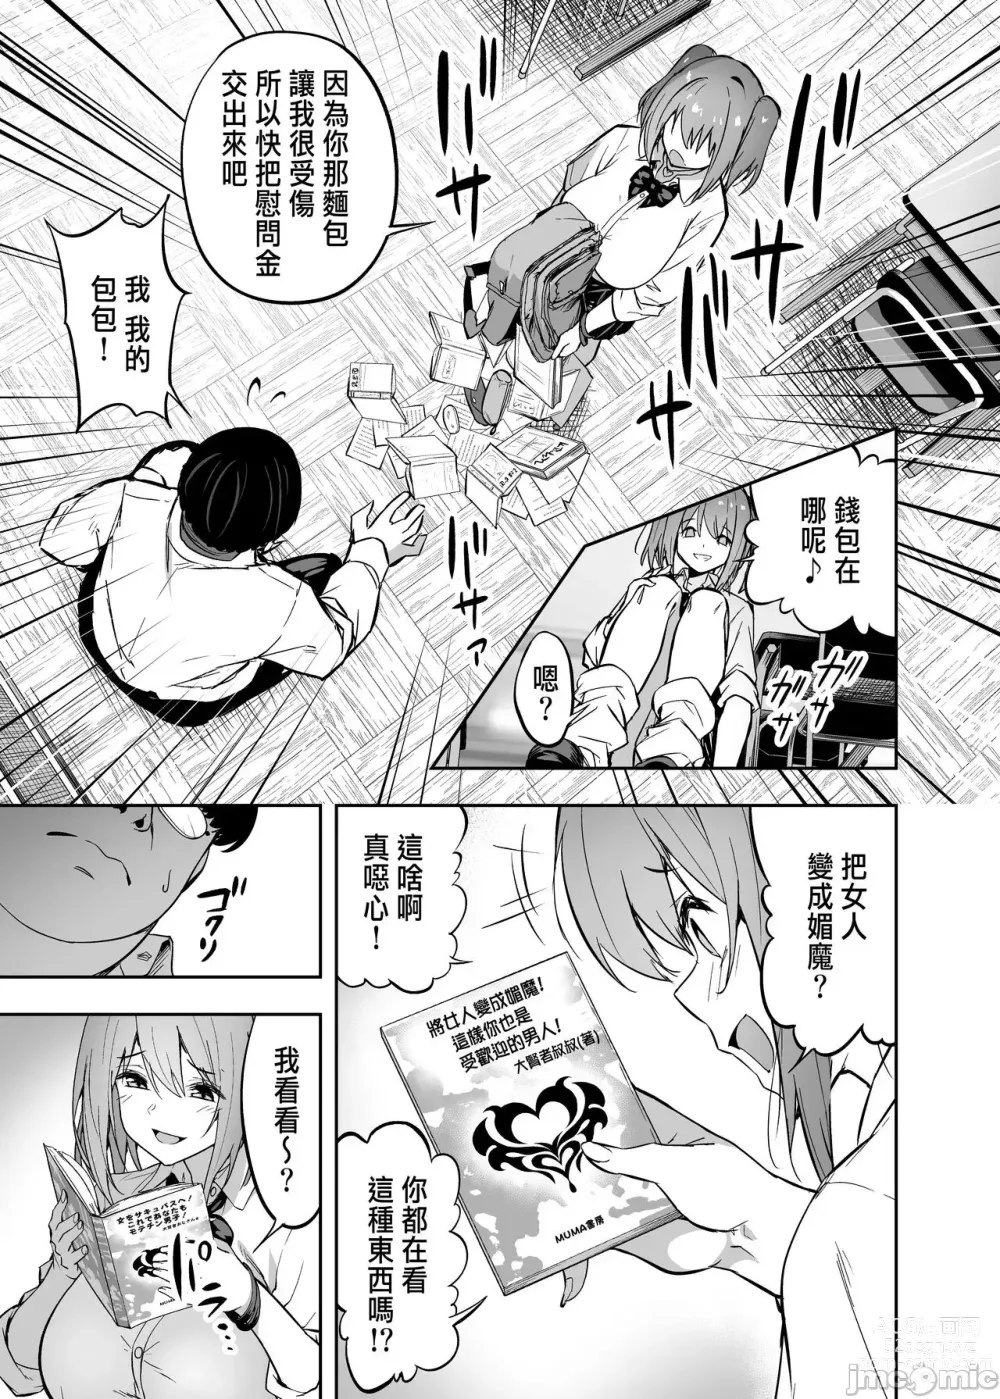 Page 8 of manga 把囂張狂妄的辣妹變成魅魔來懲罰1+1.5+2